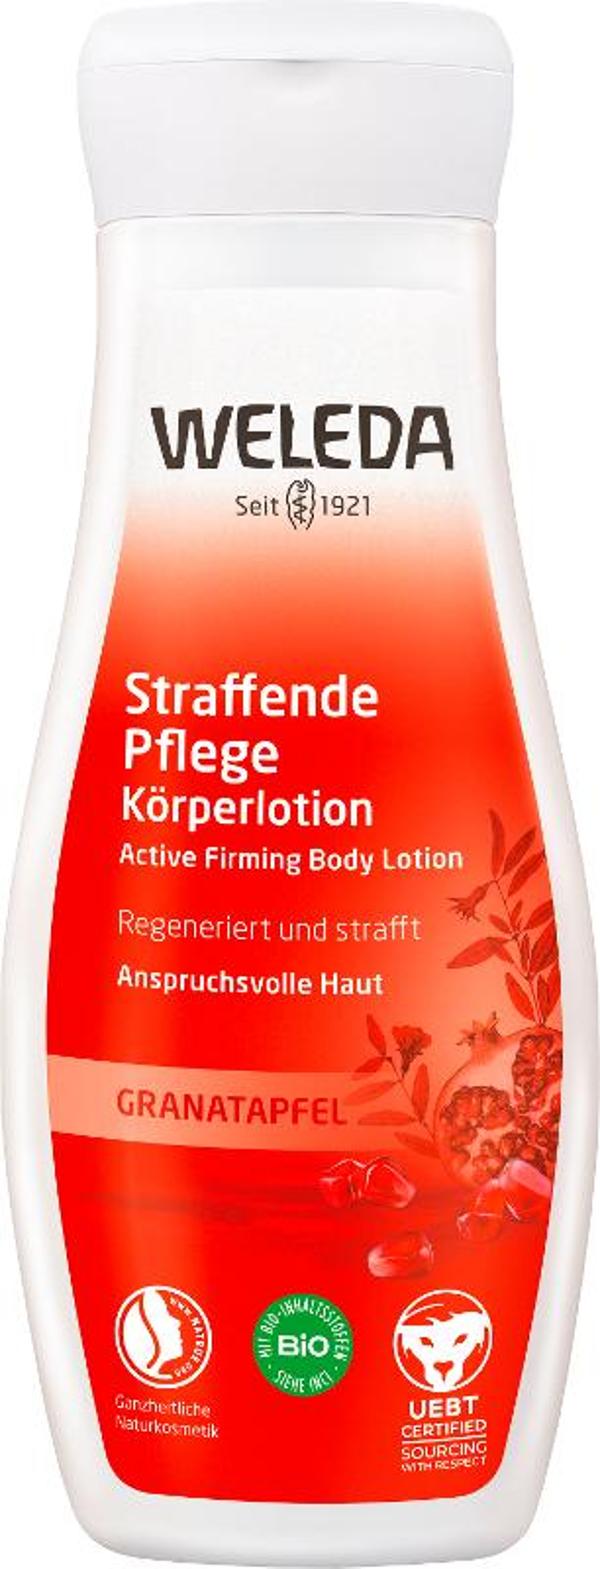 Produktfoto zu Straffende Pflege Körperlotion mit Granatapfel, 200 ml